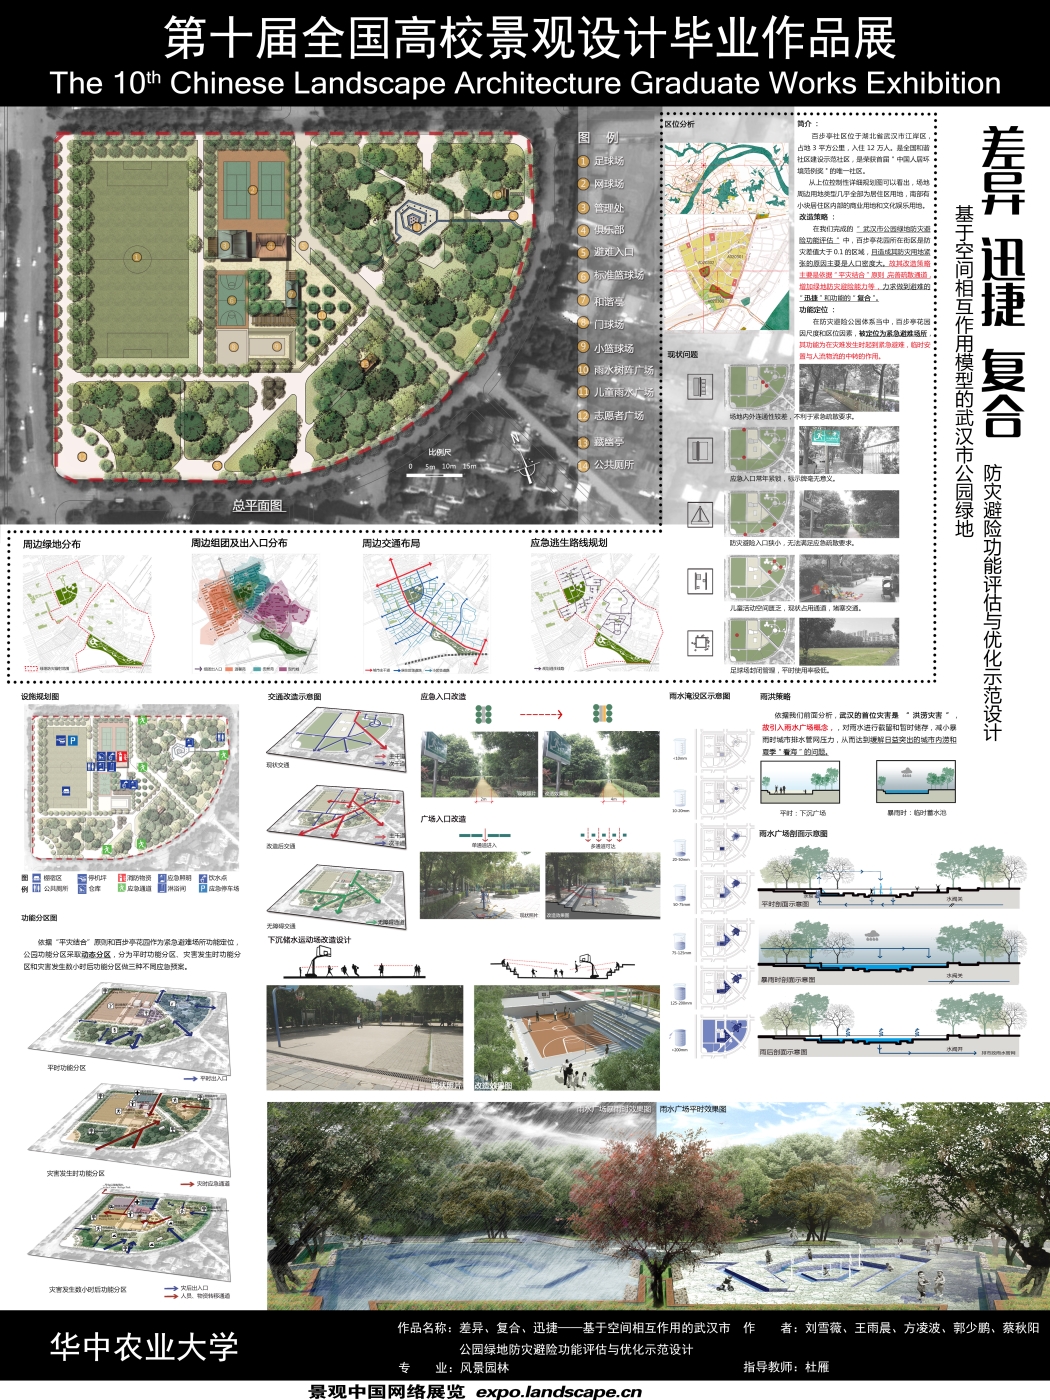 差异、复合、迅捷——基于空间相互作用的武汉市公园绿...-2